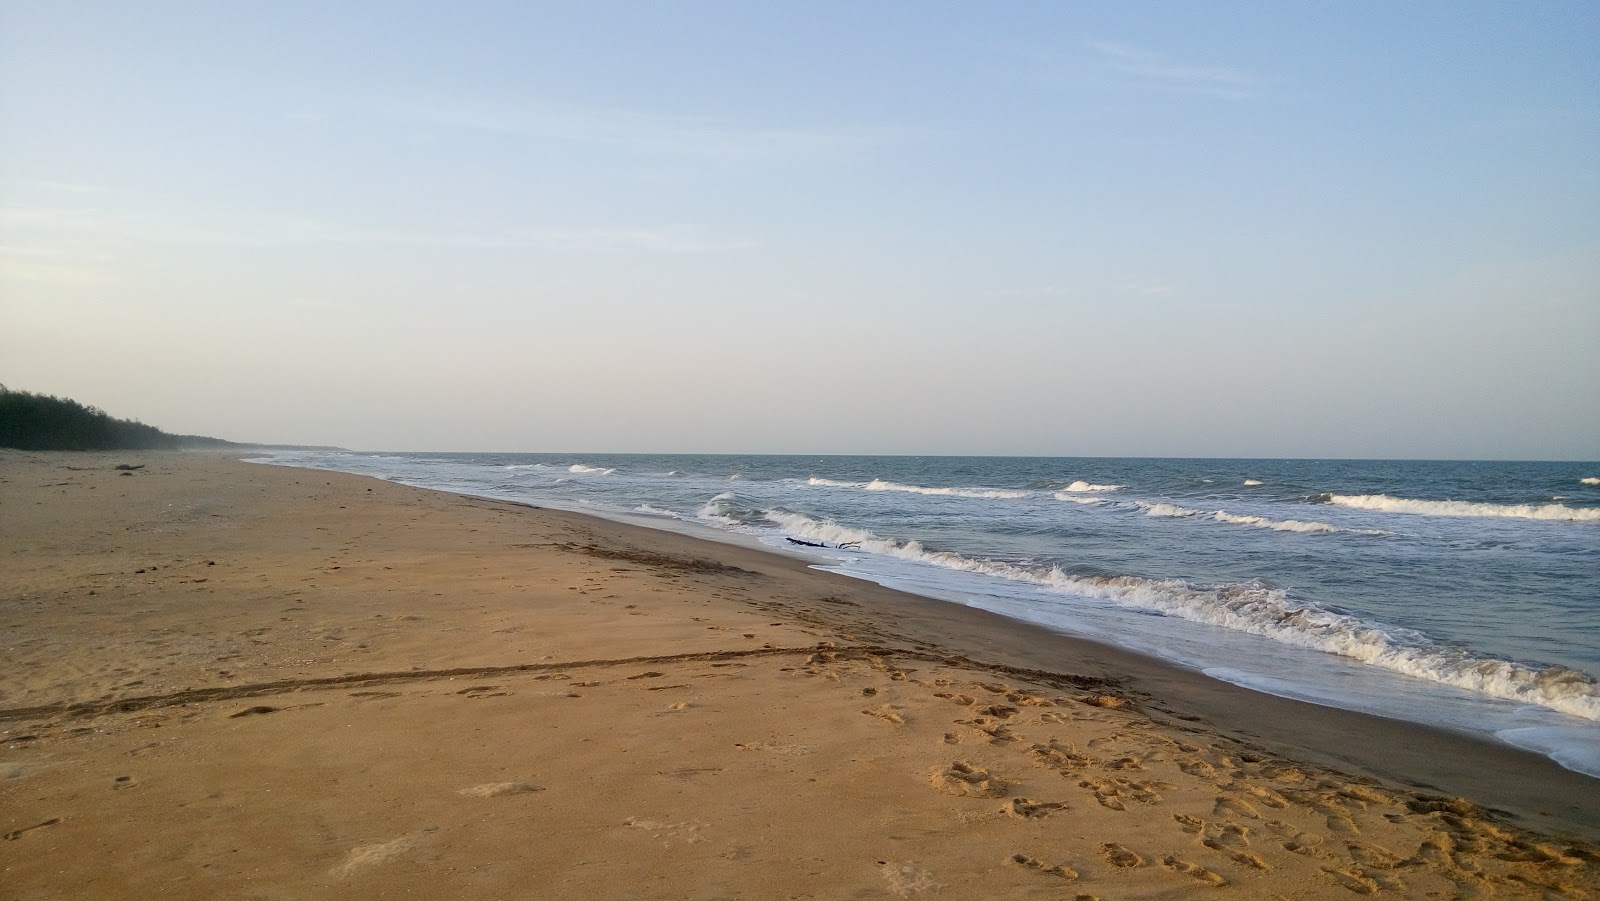 Zdjęcie Koozhaiyar Beach z powierzchnią jasny piasek